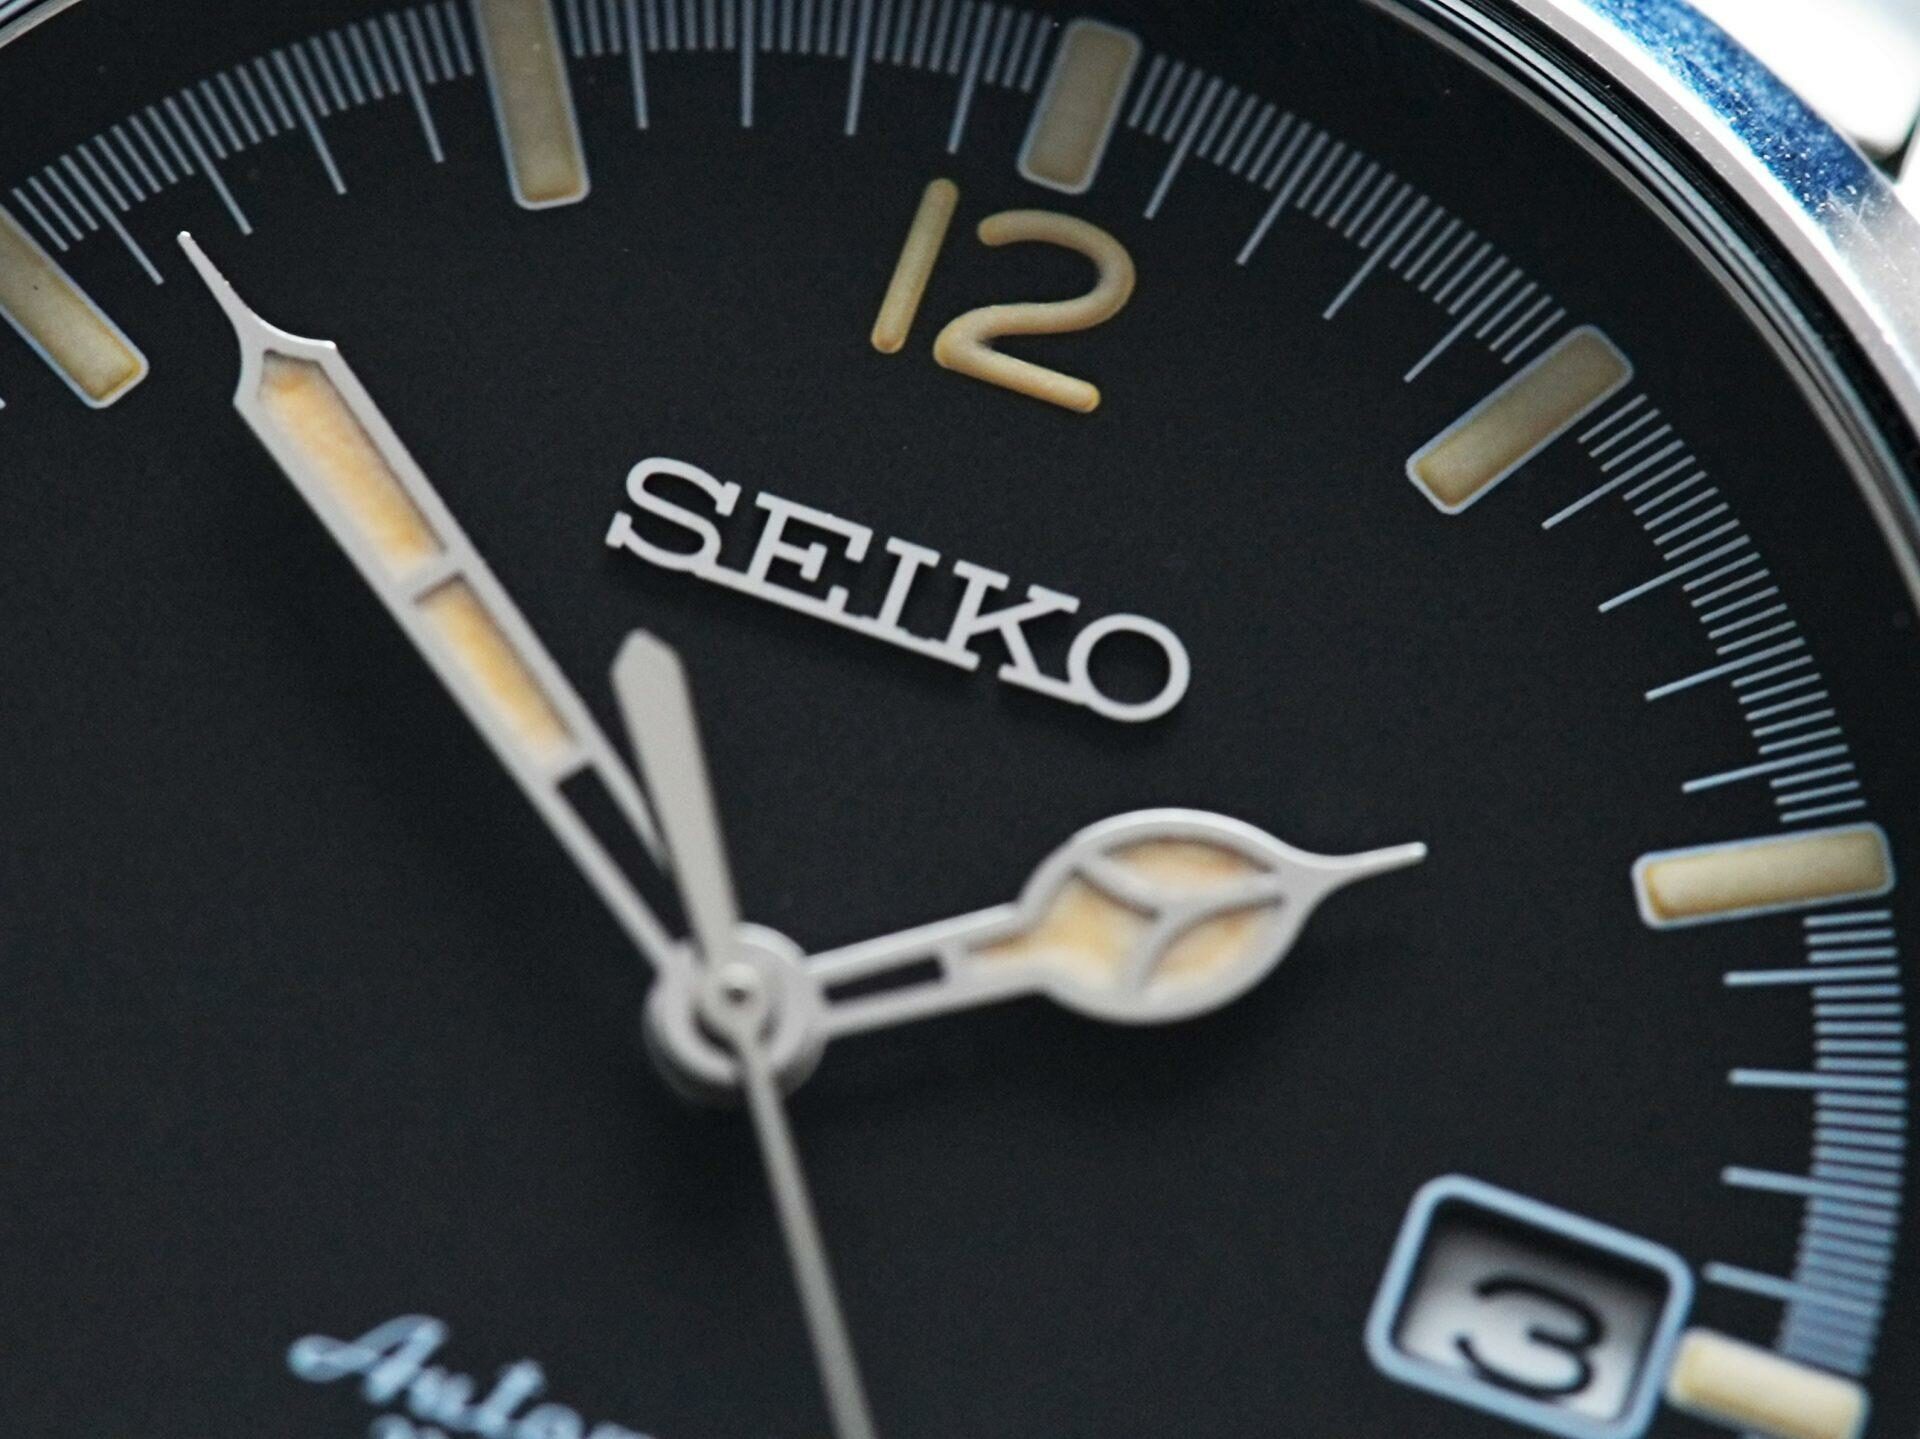 Seiko Explorer 1016 Limited Edition dial up close.